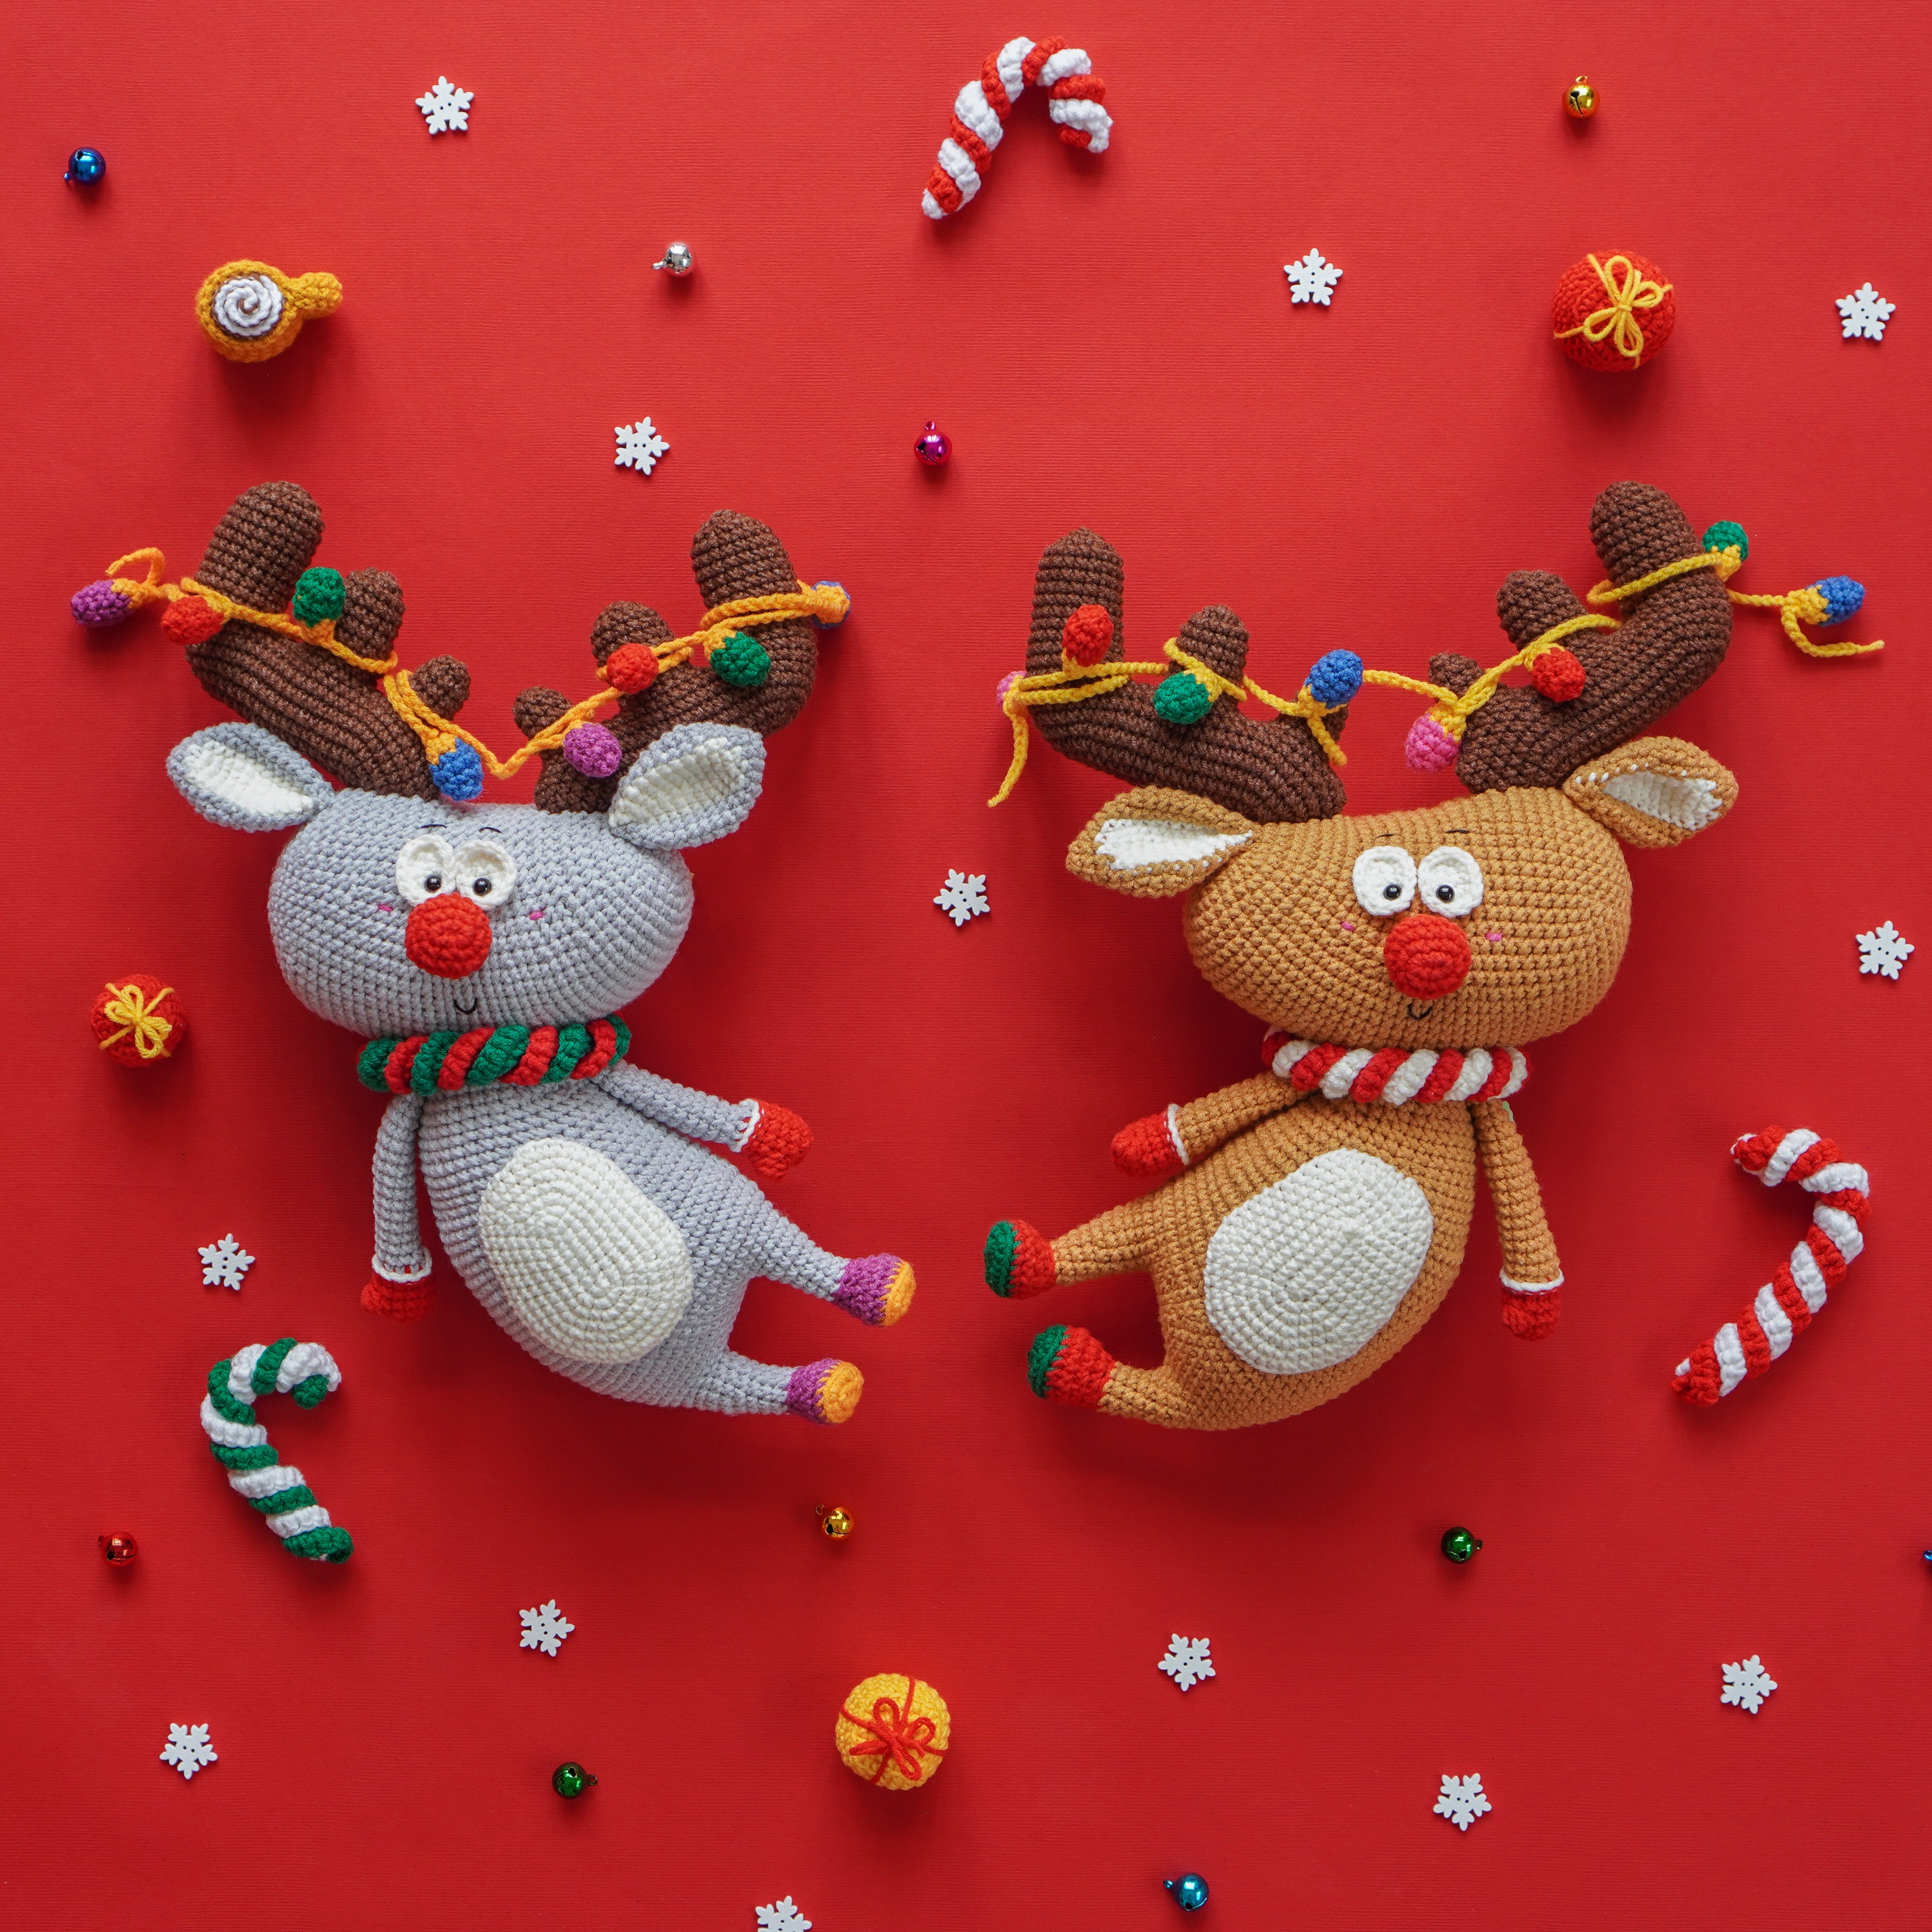 Combo de Noël : Père Noël, renne, arbre de Noël et ours polaire